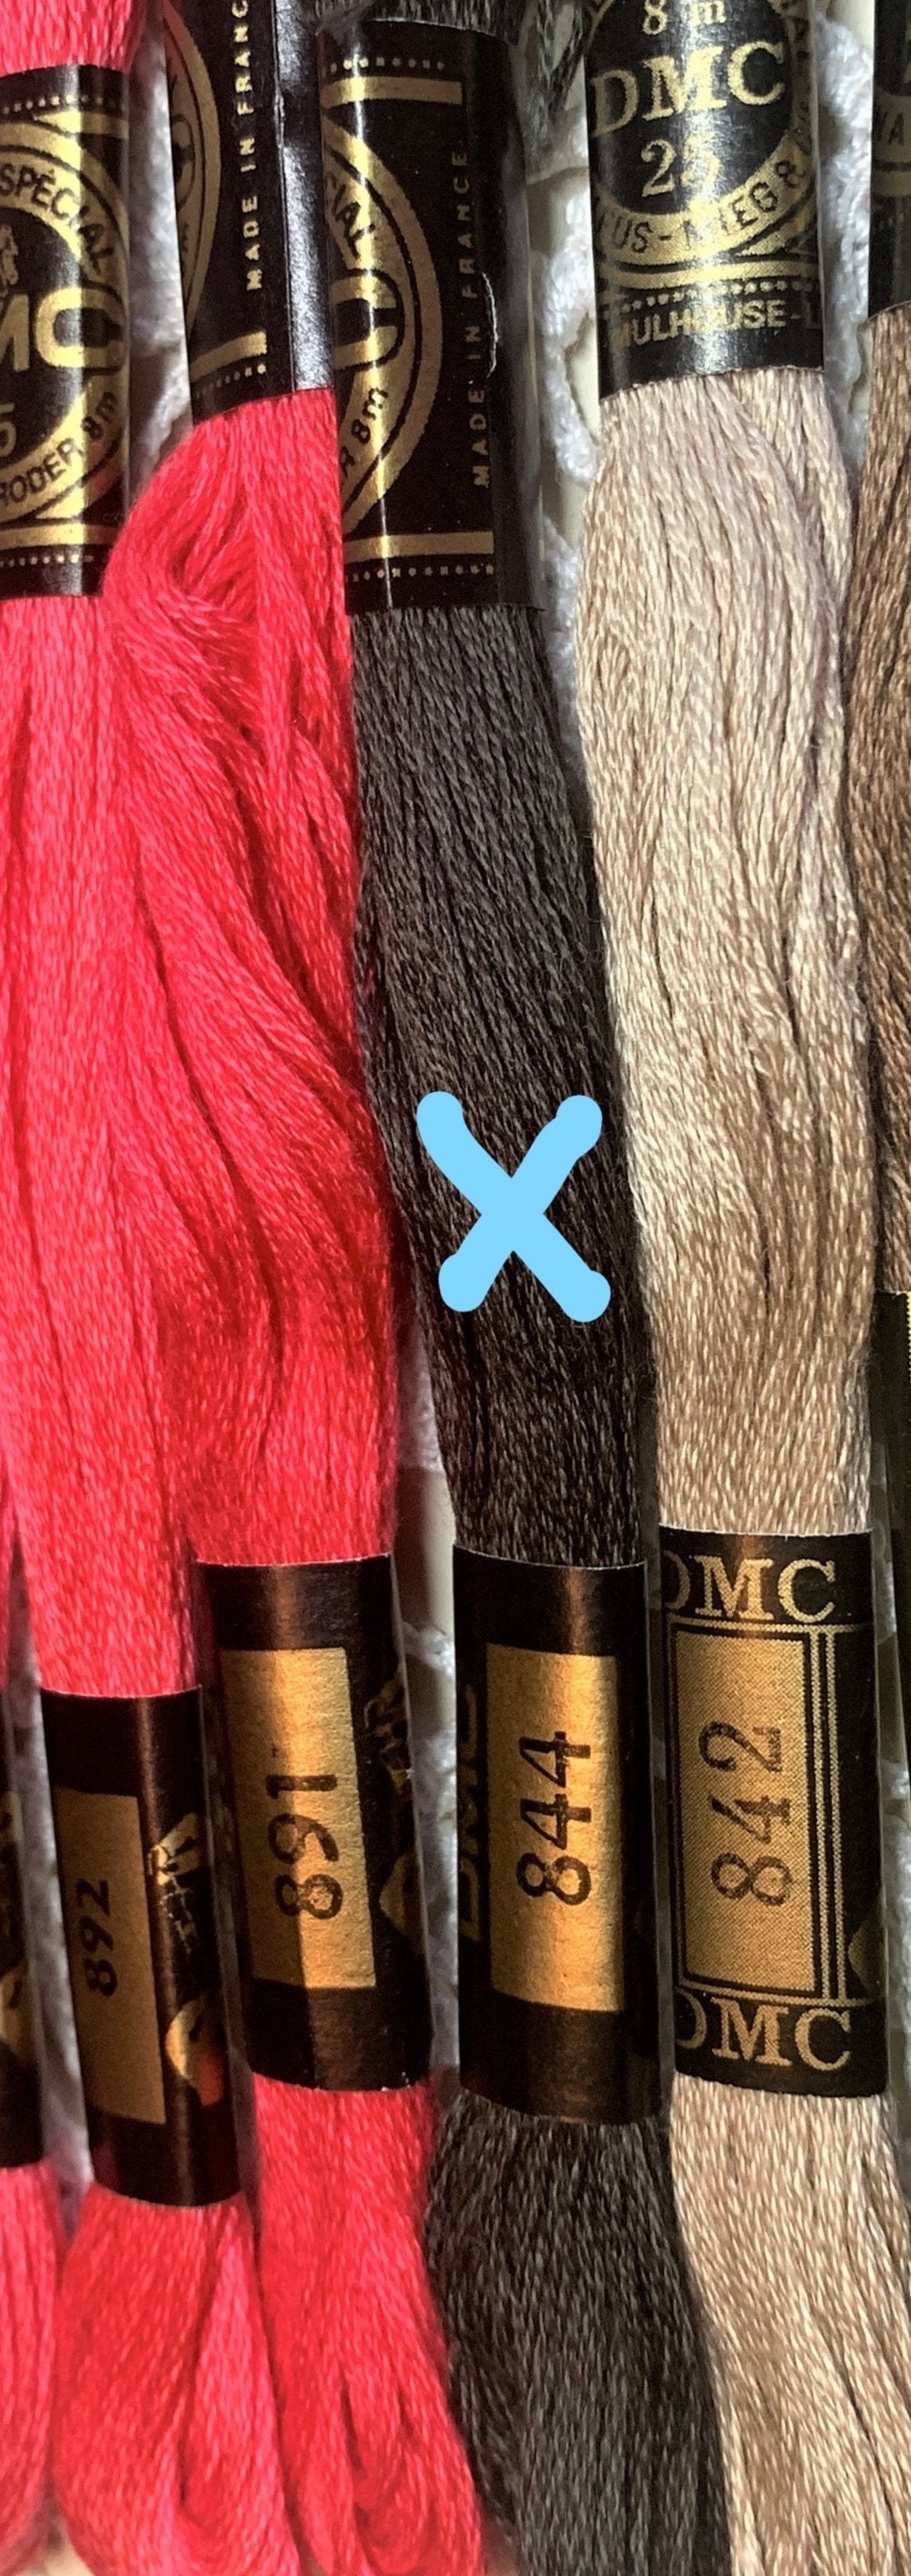 DMC® Pewter Finish Vintage Thread & Yarn Cutter